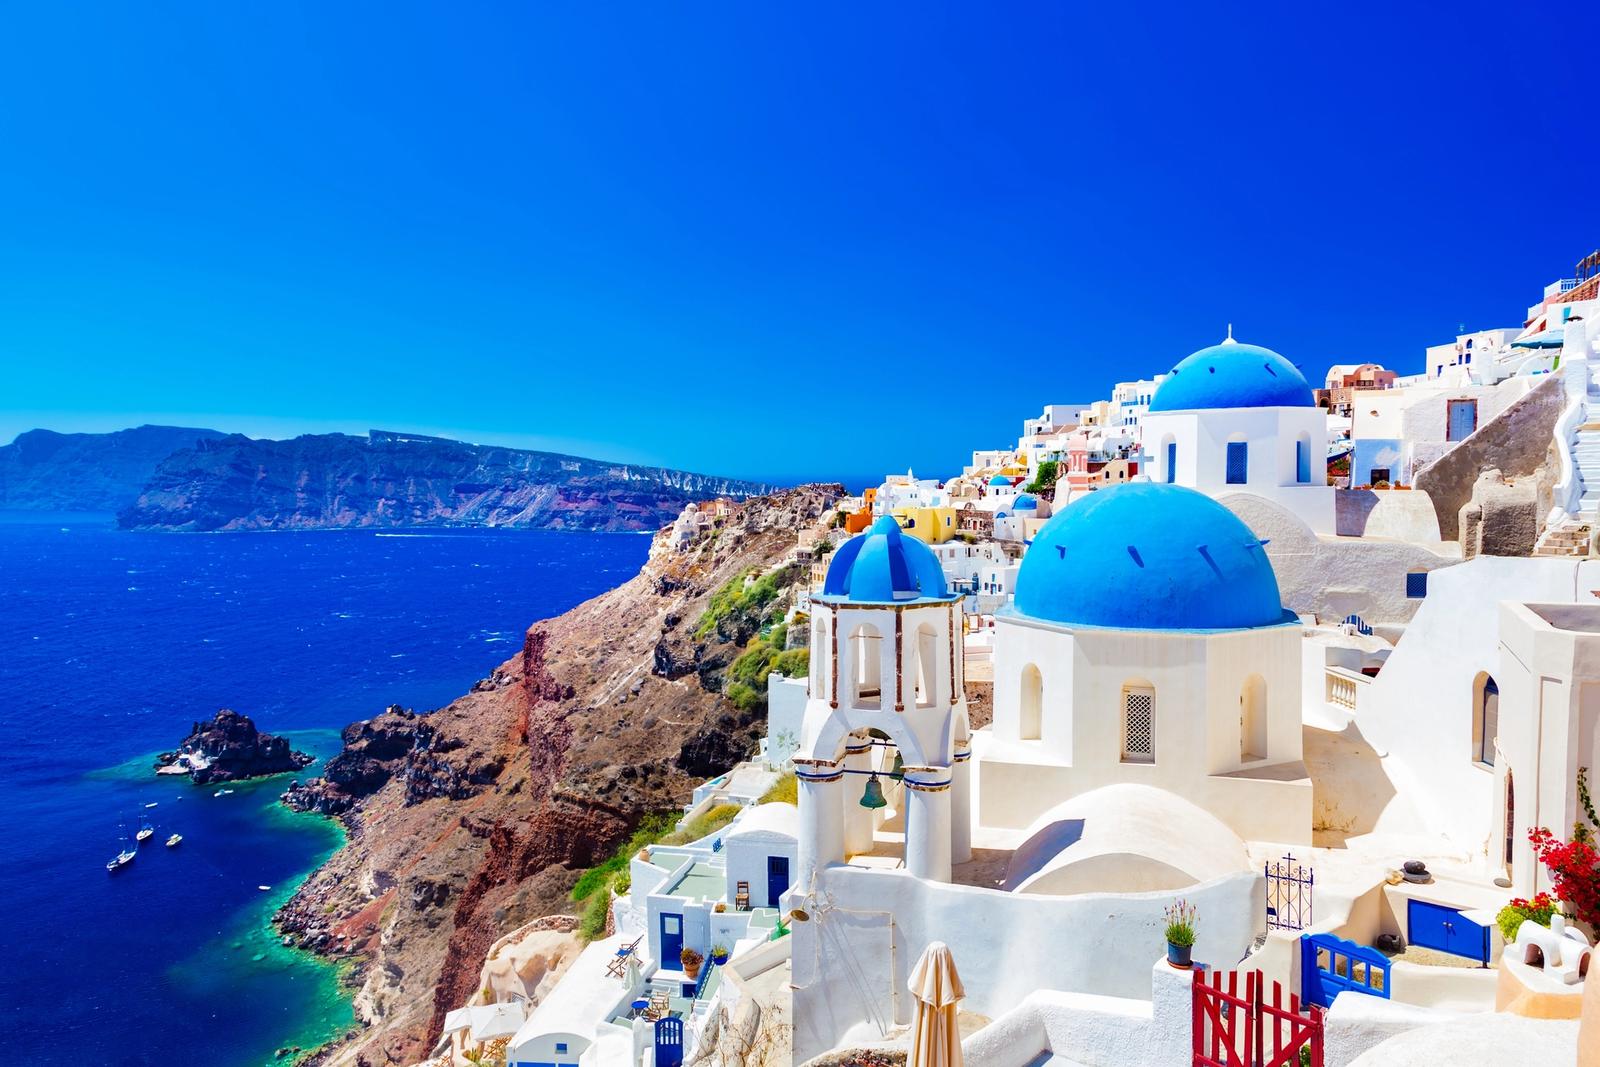 Vista panoramica delle case bianche e blu di Santorini in Grecia